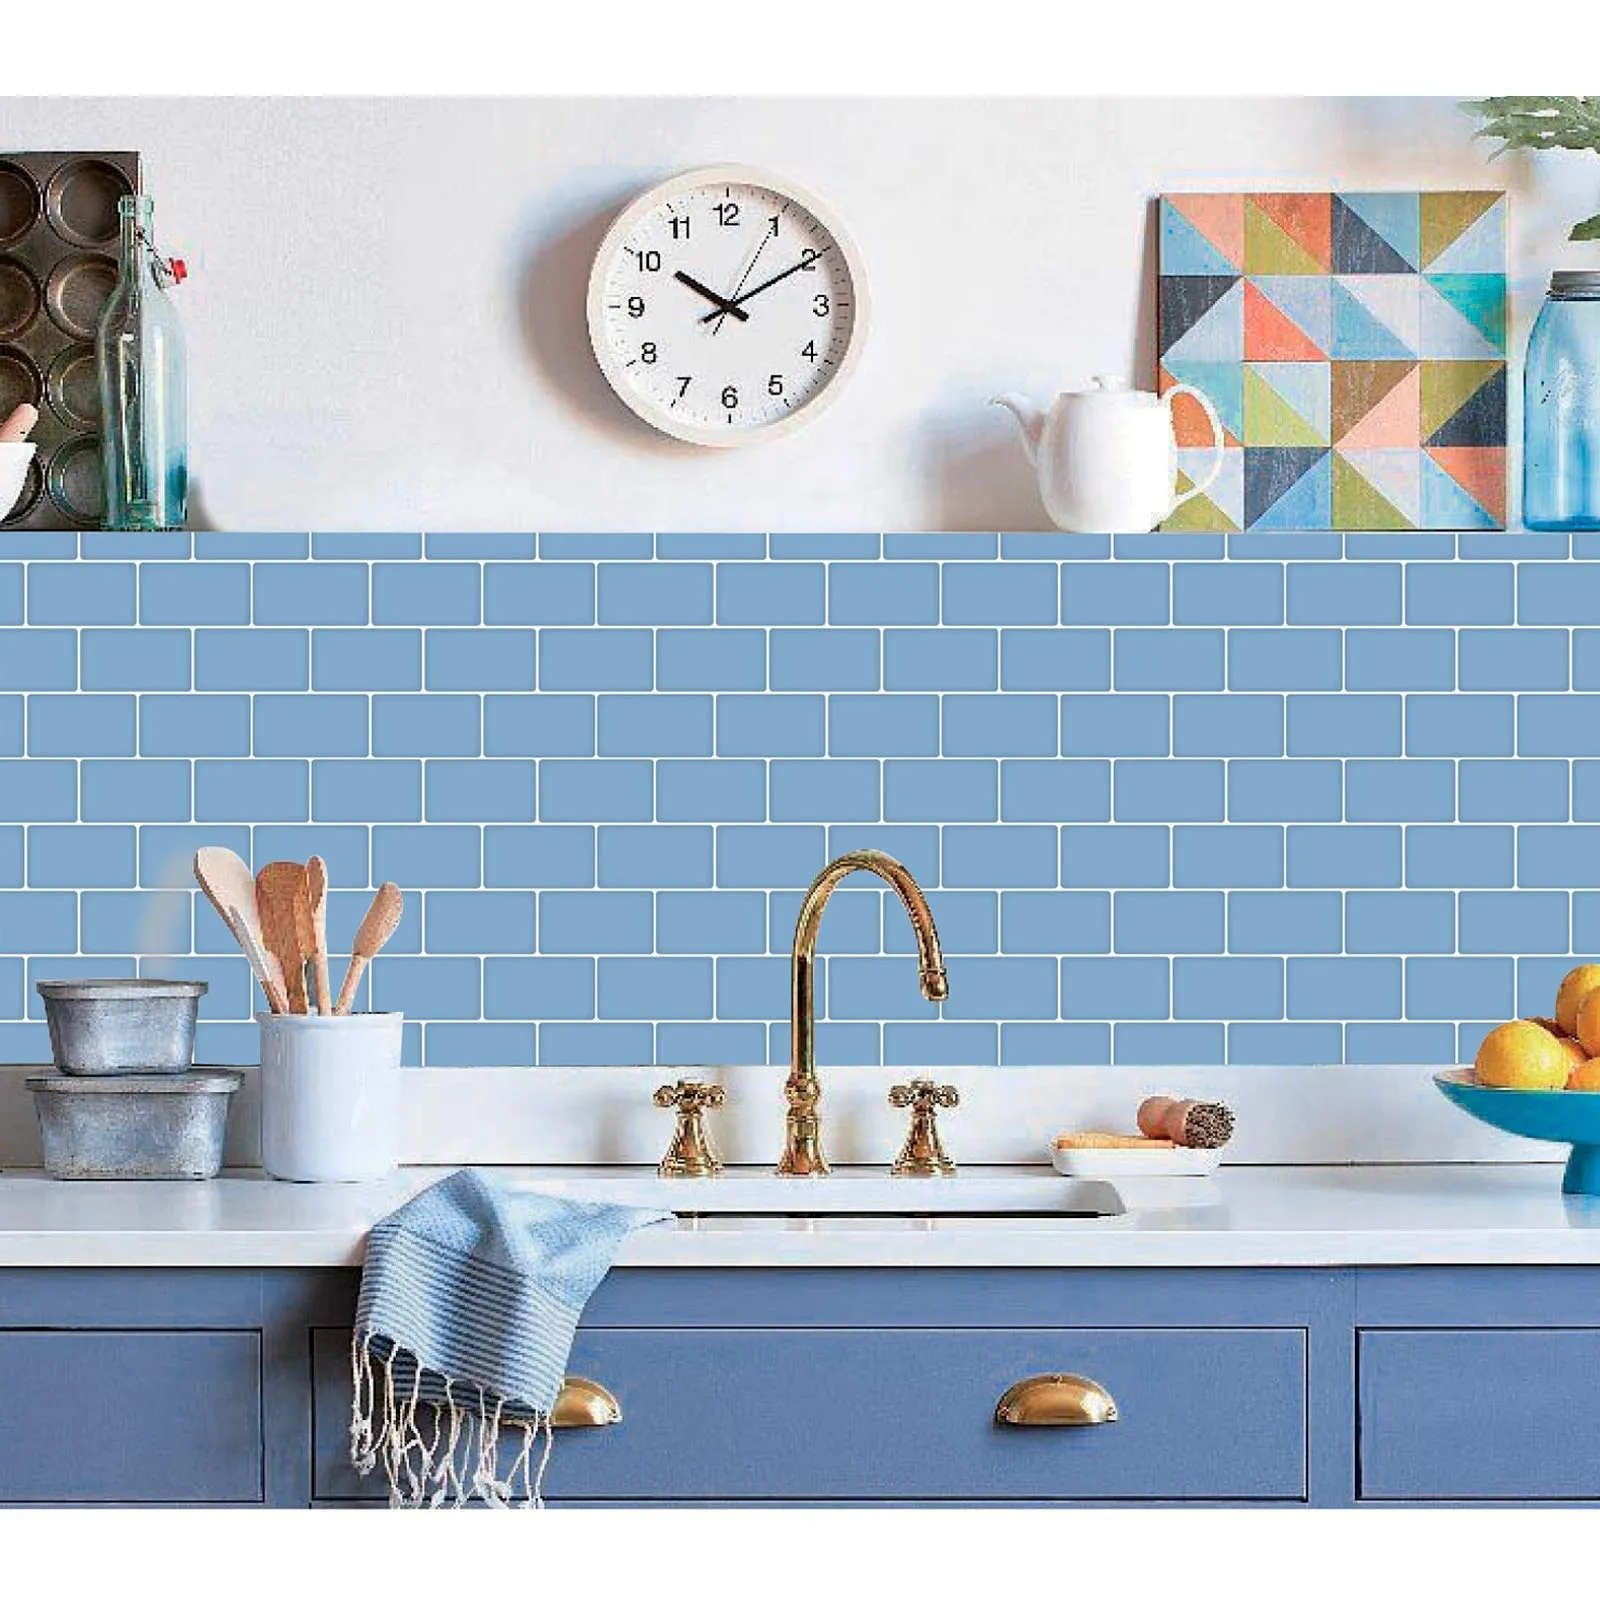 Art3D 30x30 cm Peel en stick backsplash tegels 3D muurstickers voor keuken badkamer slaapkamer wasruimtes, glanzend lichtblauw, achtergronden (10 vel)